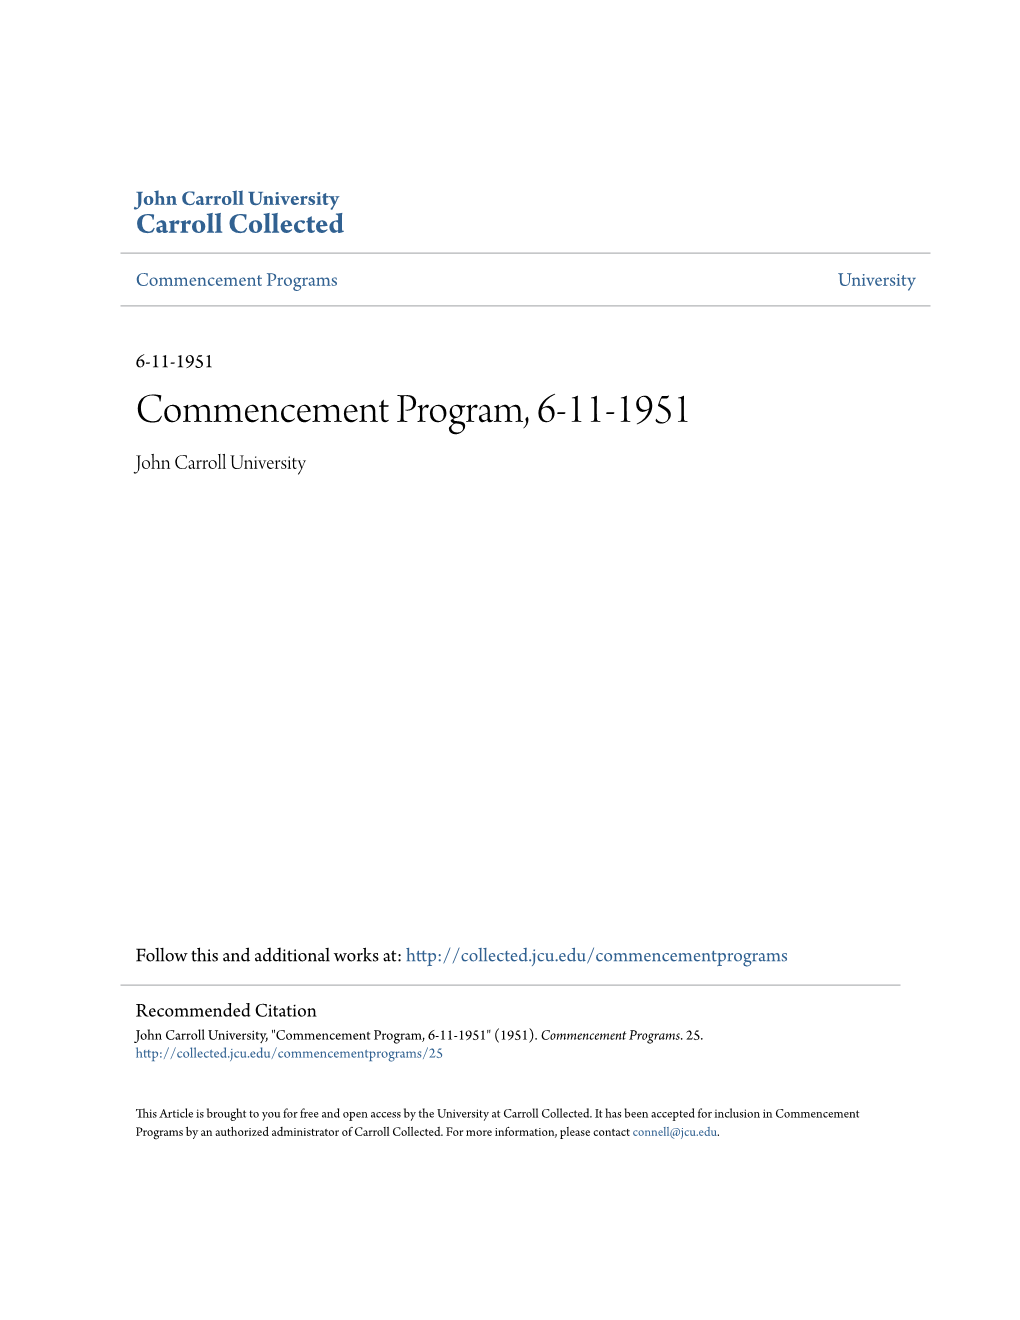 Commencement Program, 6-11-1951 John Carroll University